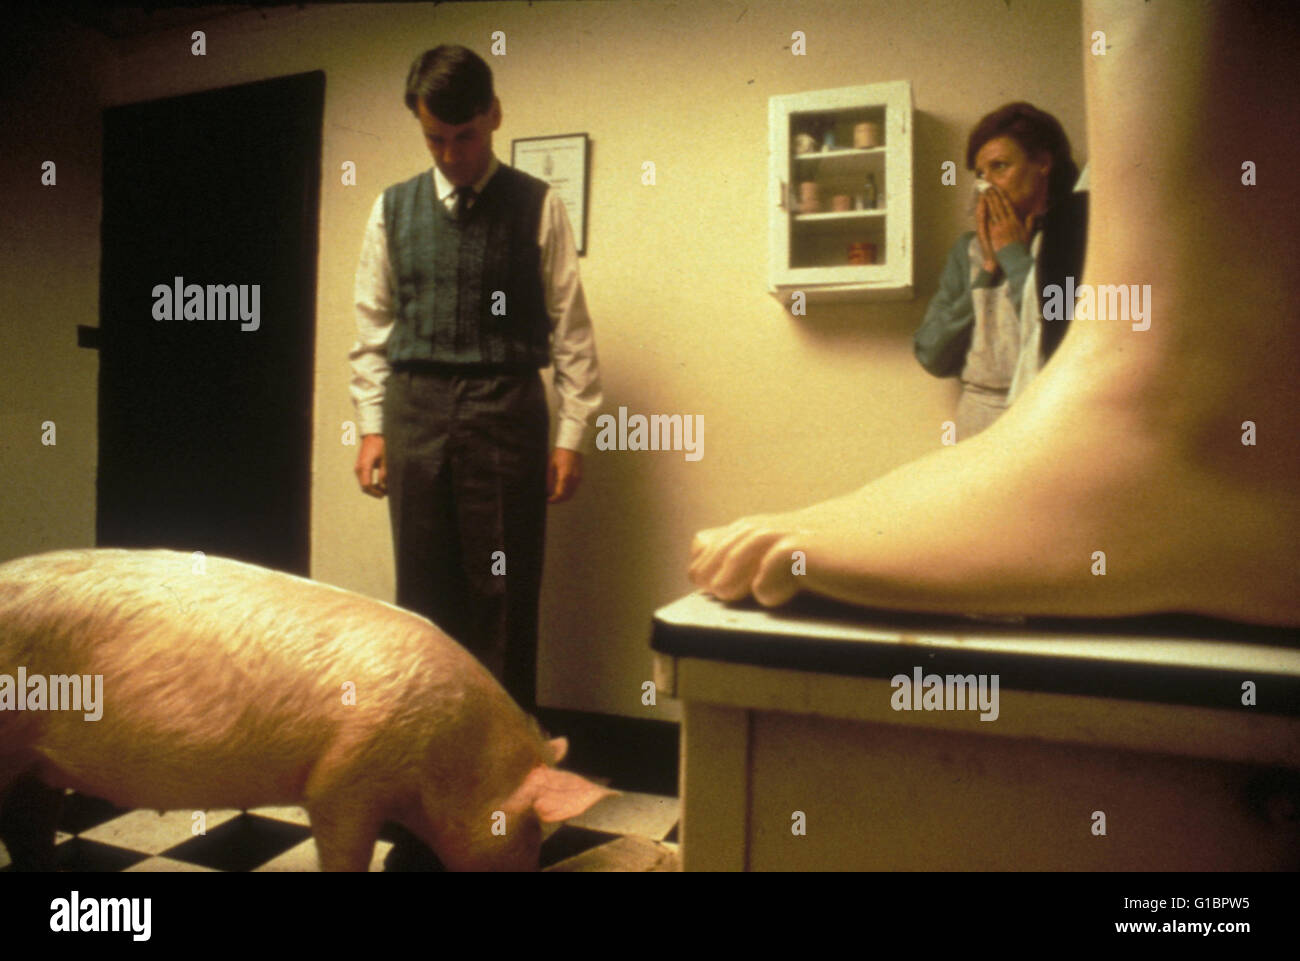 Magere Zeiten - Der Film mit dem Schwein, Stock Photo